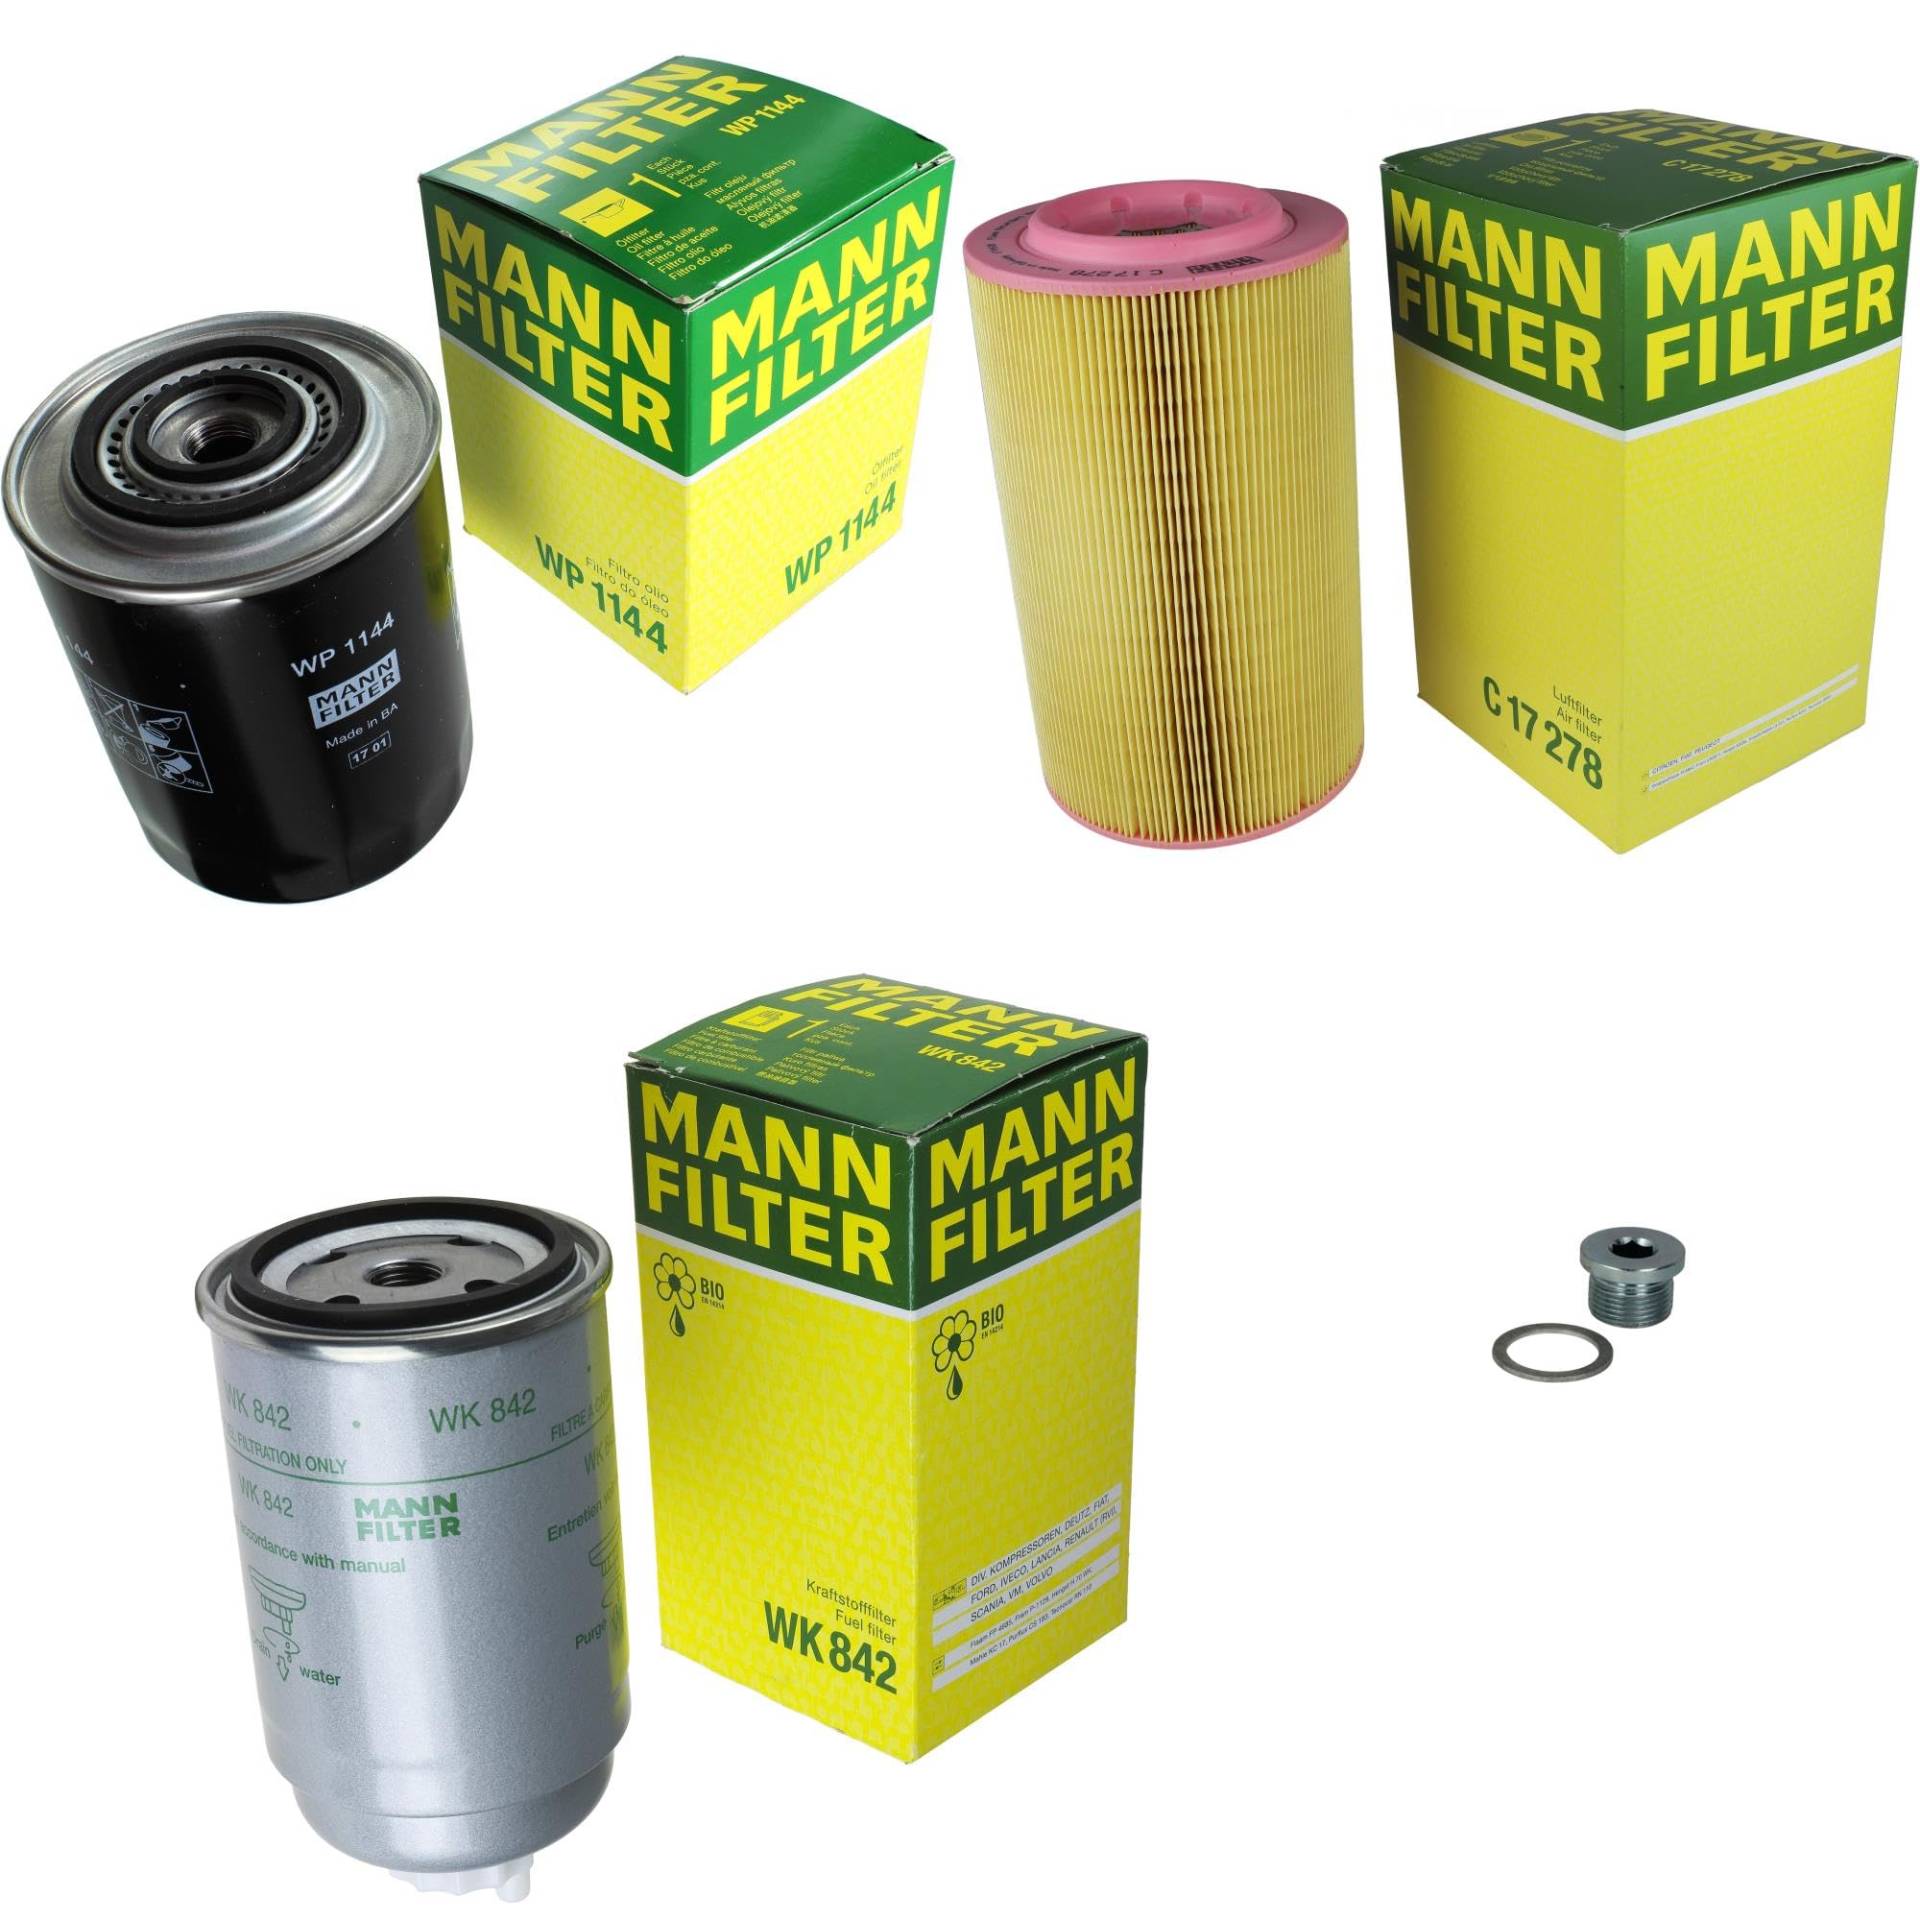 EISENFELS Filter Set Inspektionspaket erstellt mit MANN-FILTER Ölfilter WP 1144, Luftfilter C 17 278, Kraftstofffilter WK 842, Verschlussschraube von EISENFELS